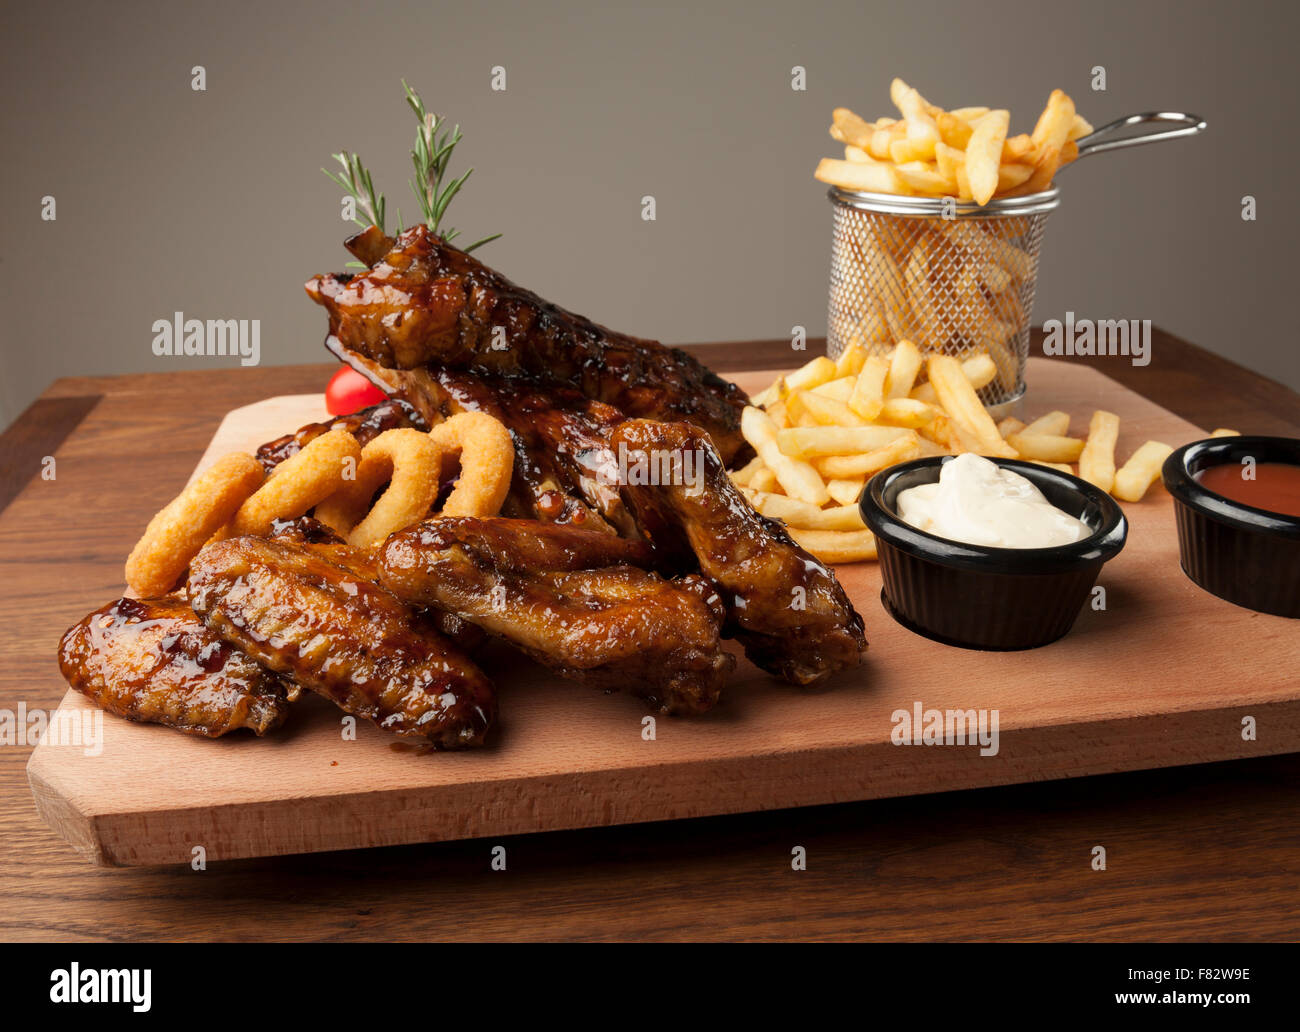 Des ailes de poulet et des côtes avec des frites sur la table en bois Banque D'Images